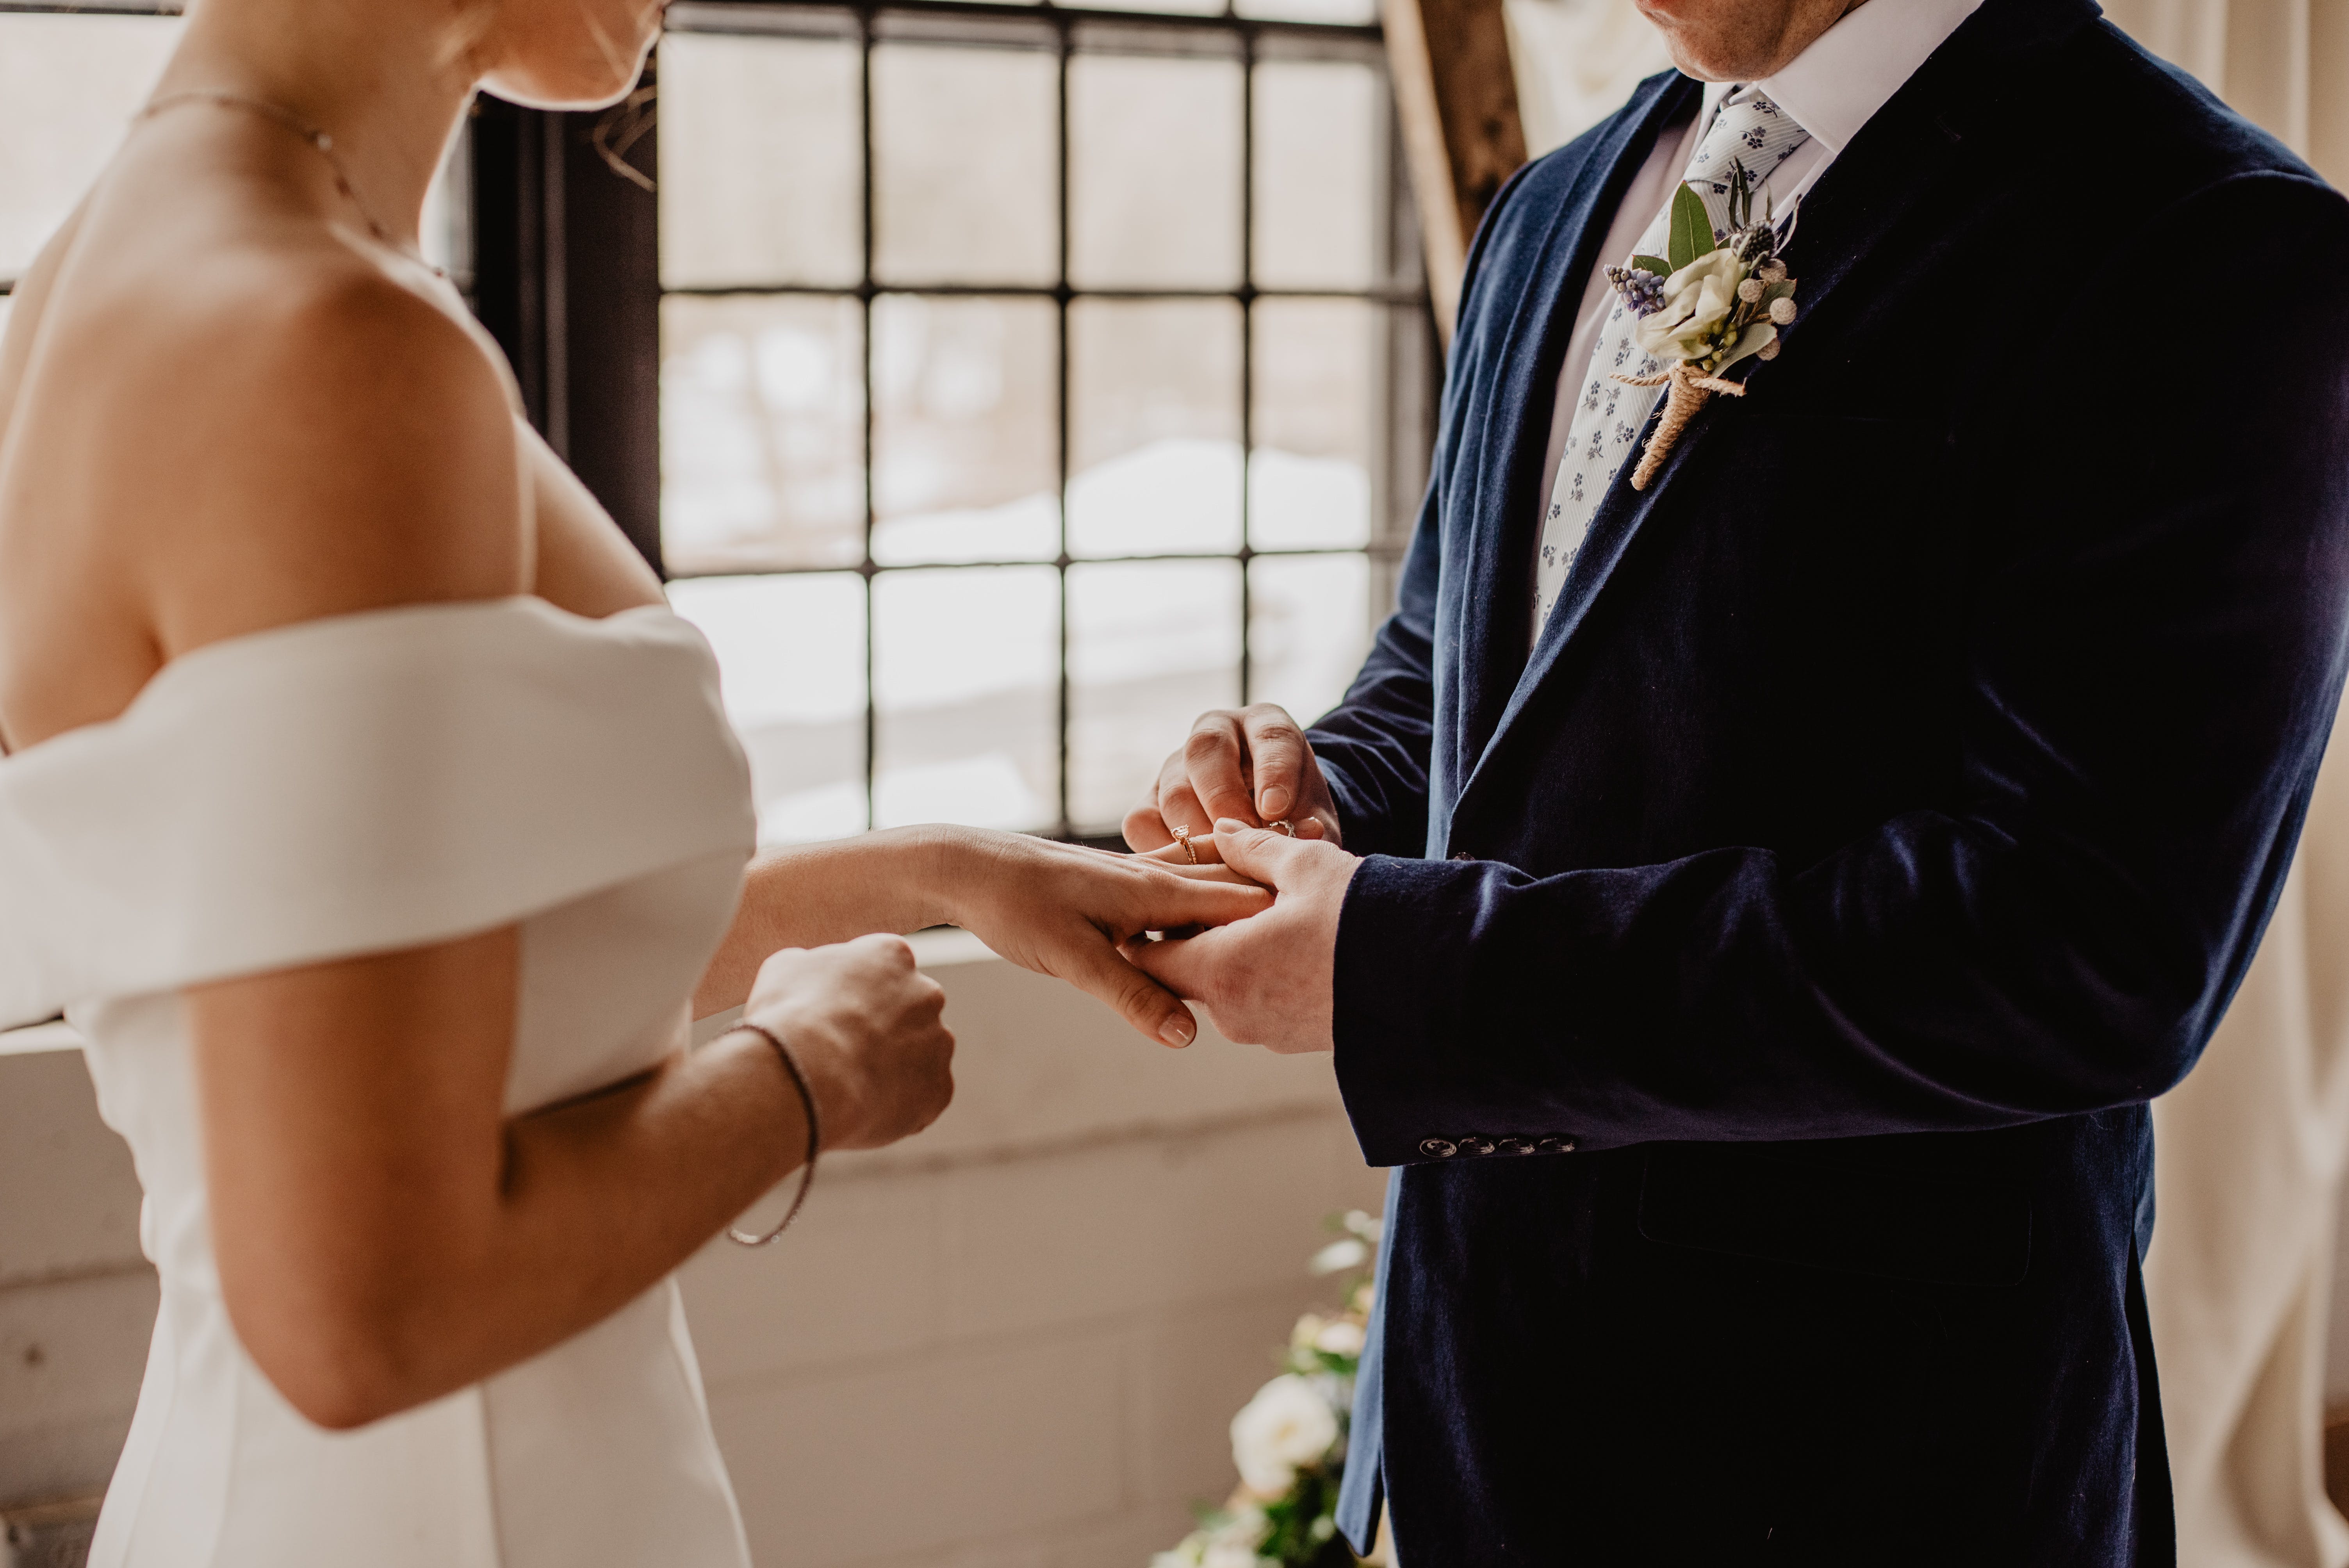 Wedding | Source: Pexels